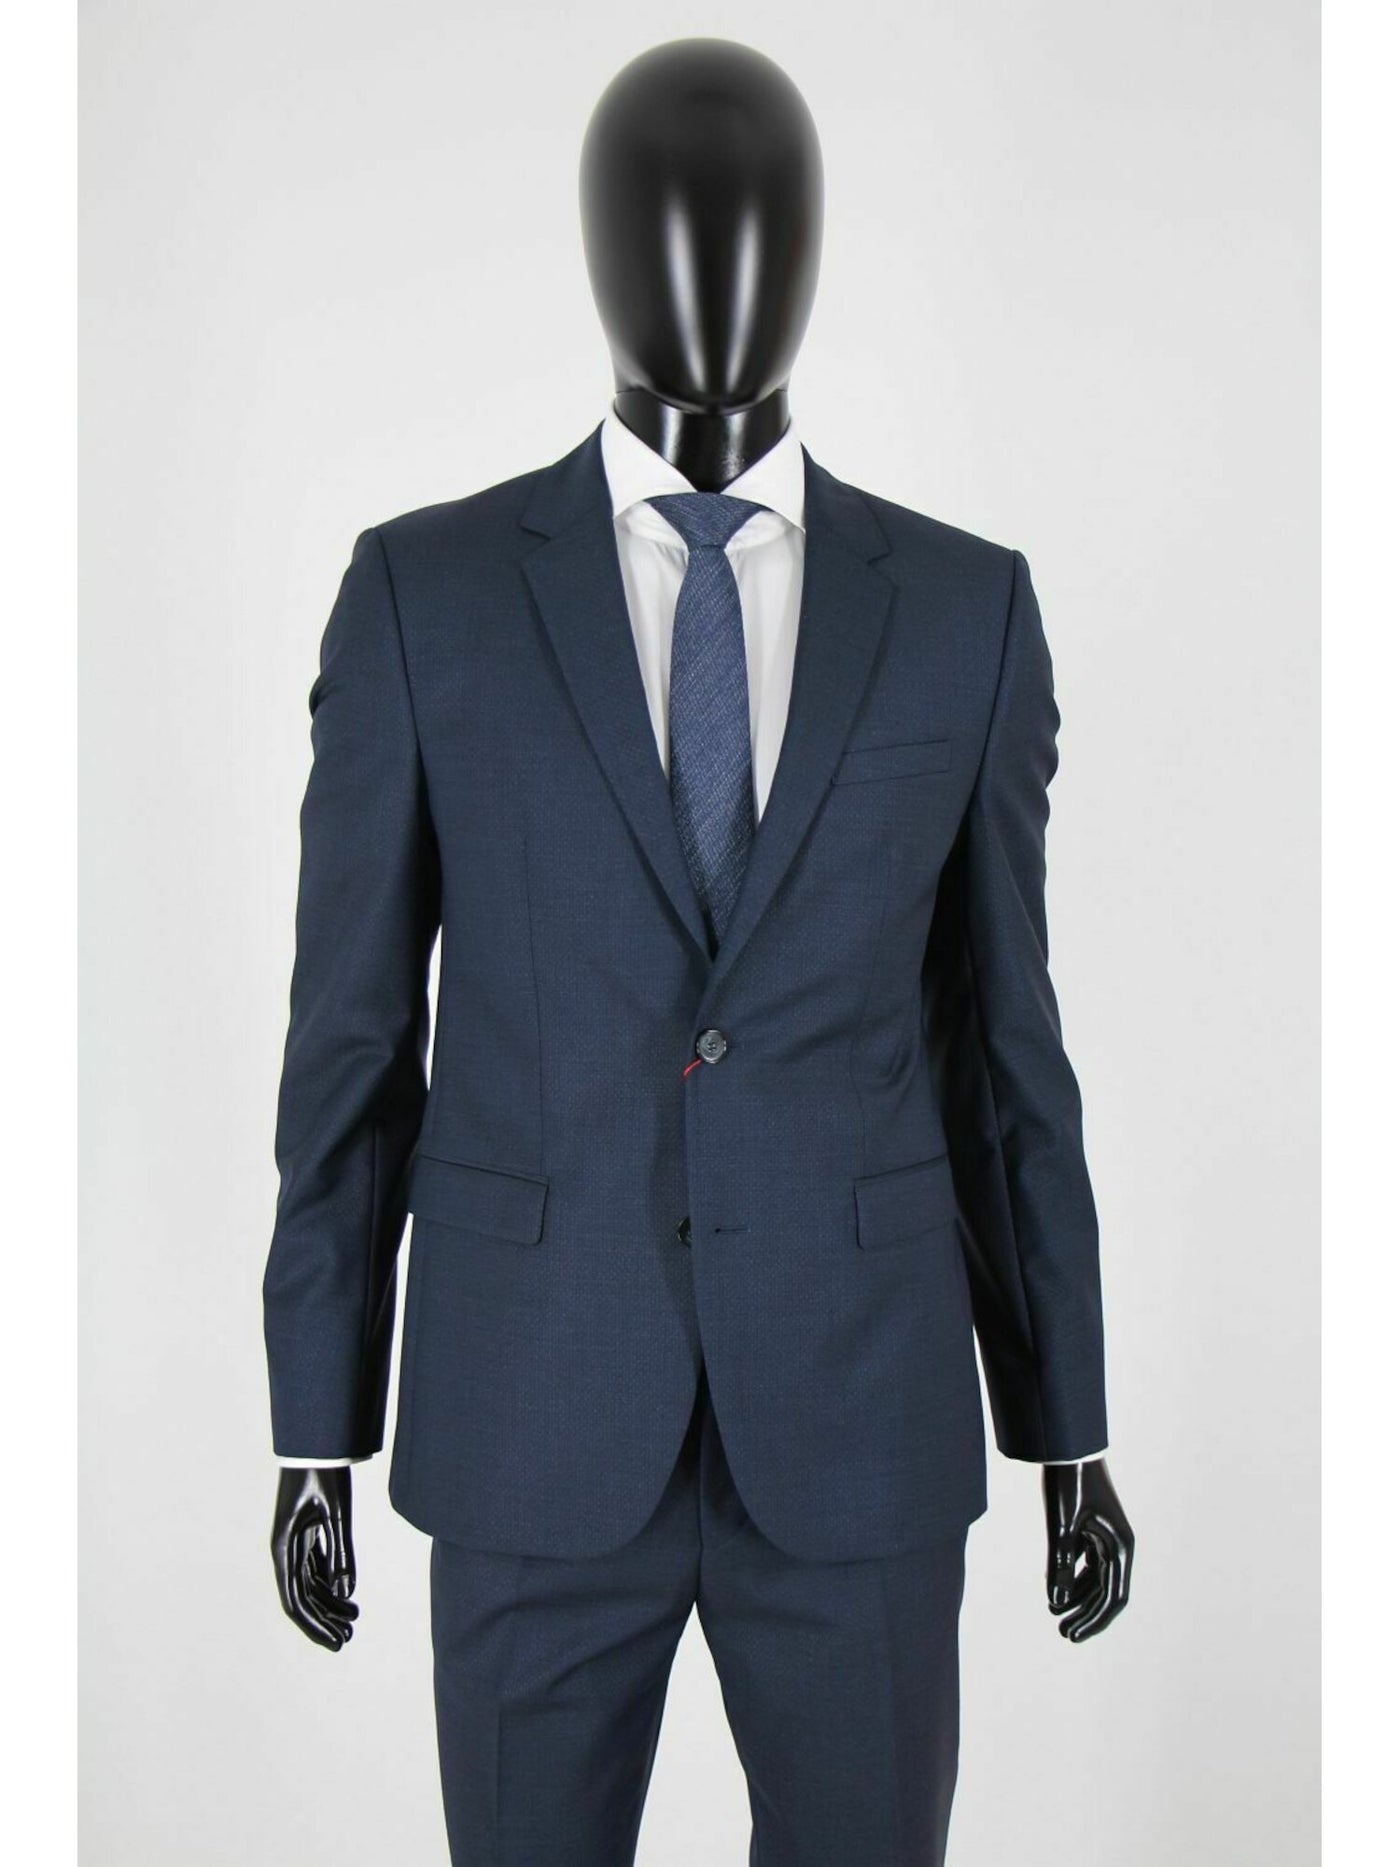 HUGO BOSS Mens Navy Single Breasted, Extra Slim Fit Wool Blend Suit Separate Blazer Jacket 42R